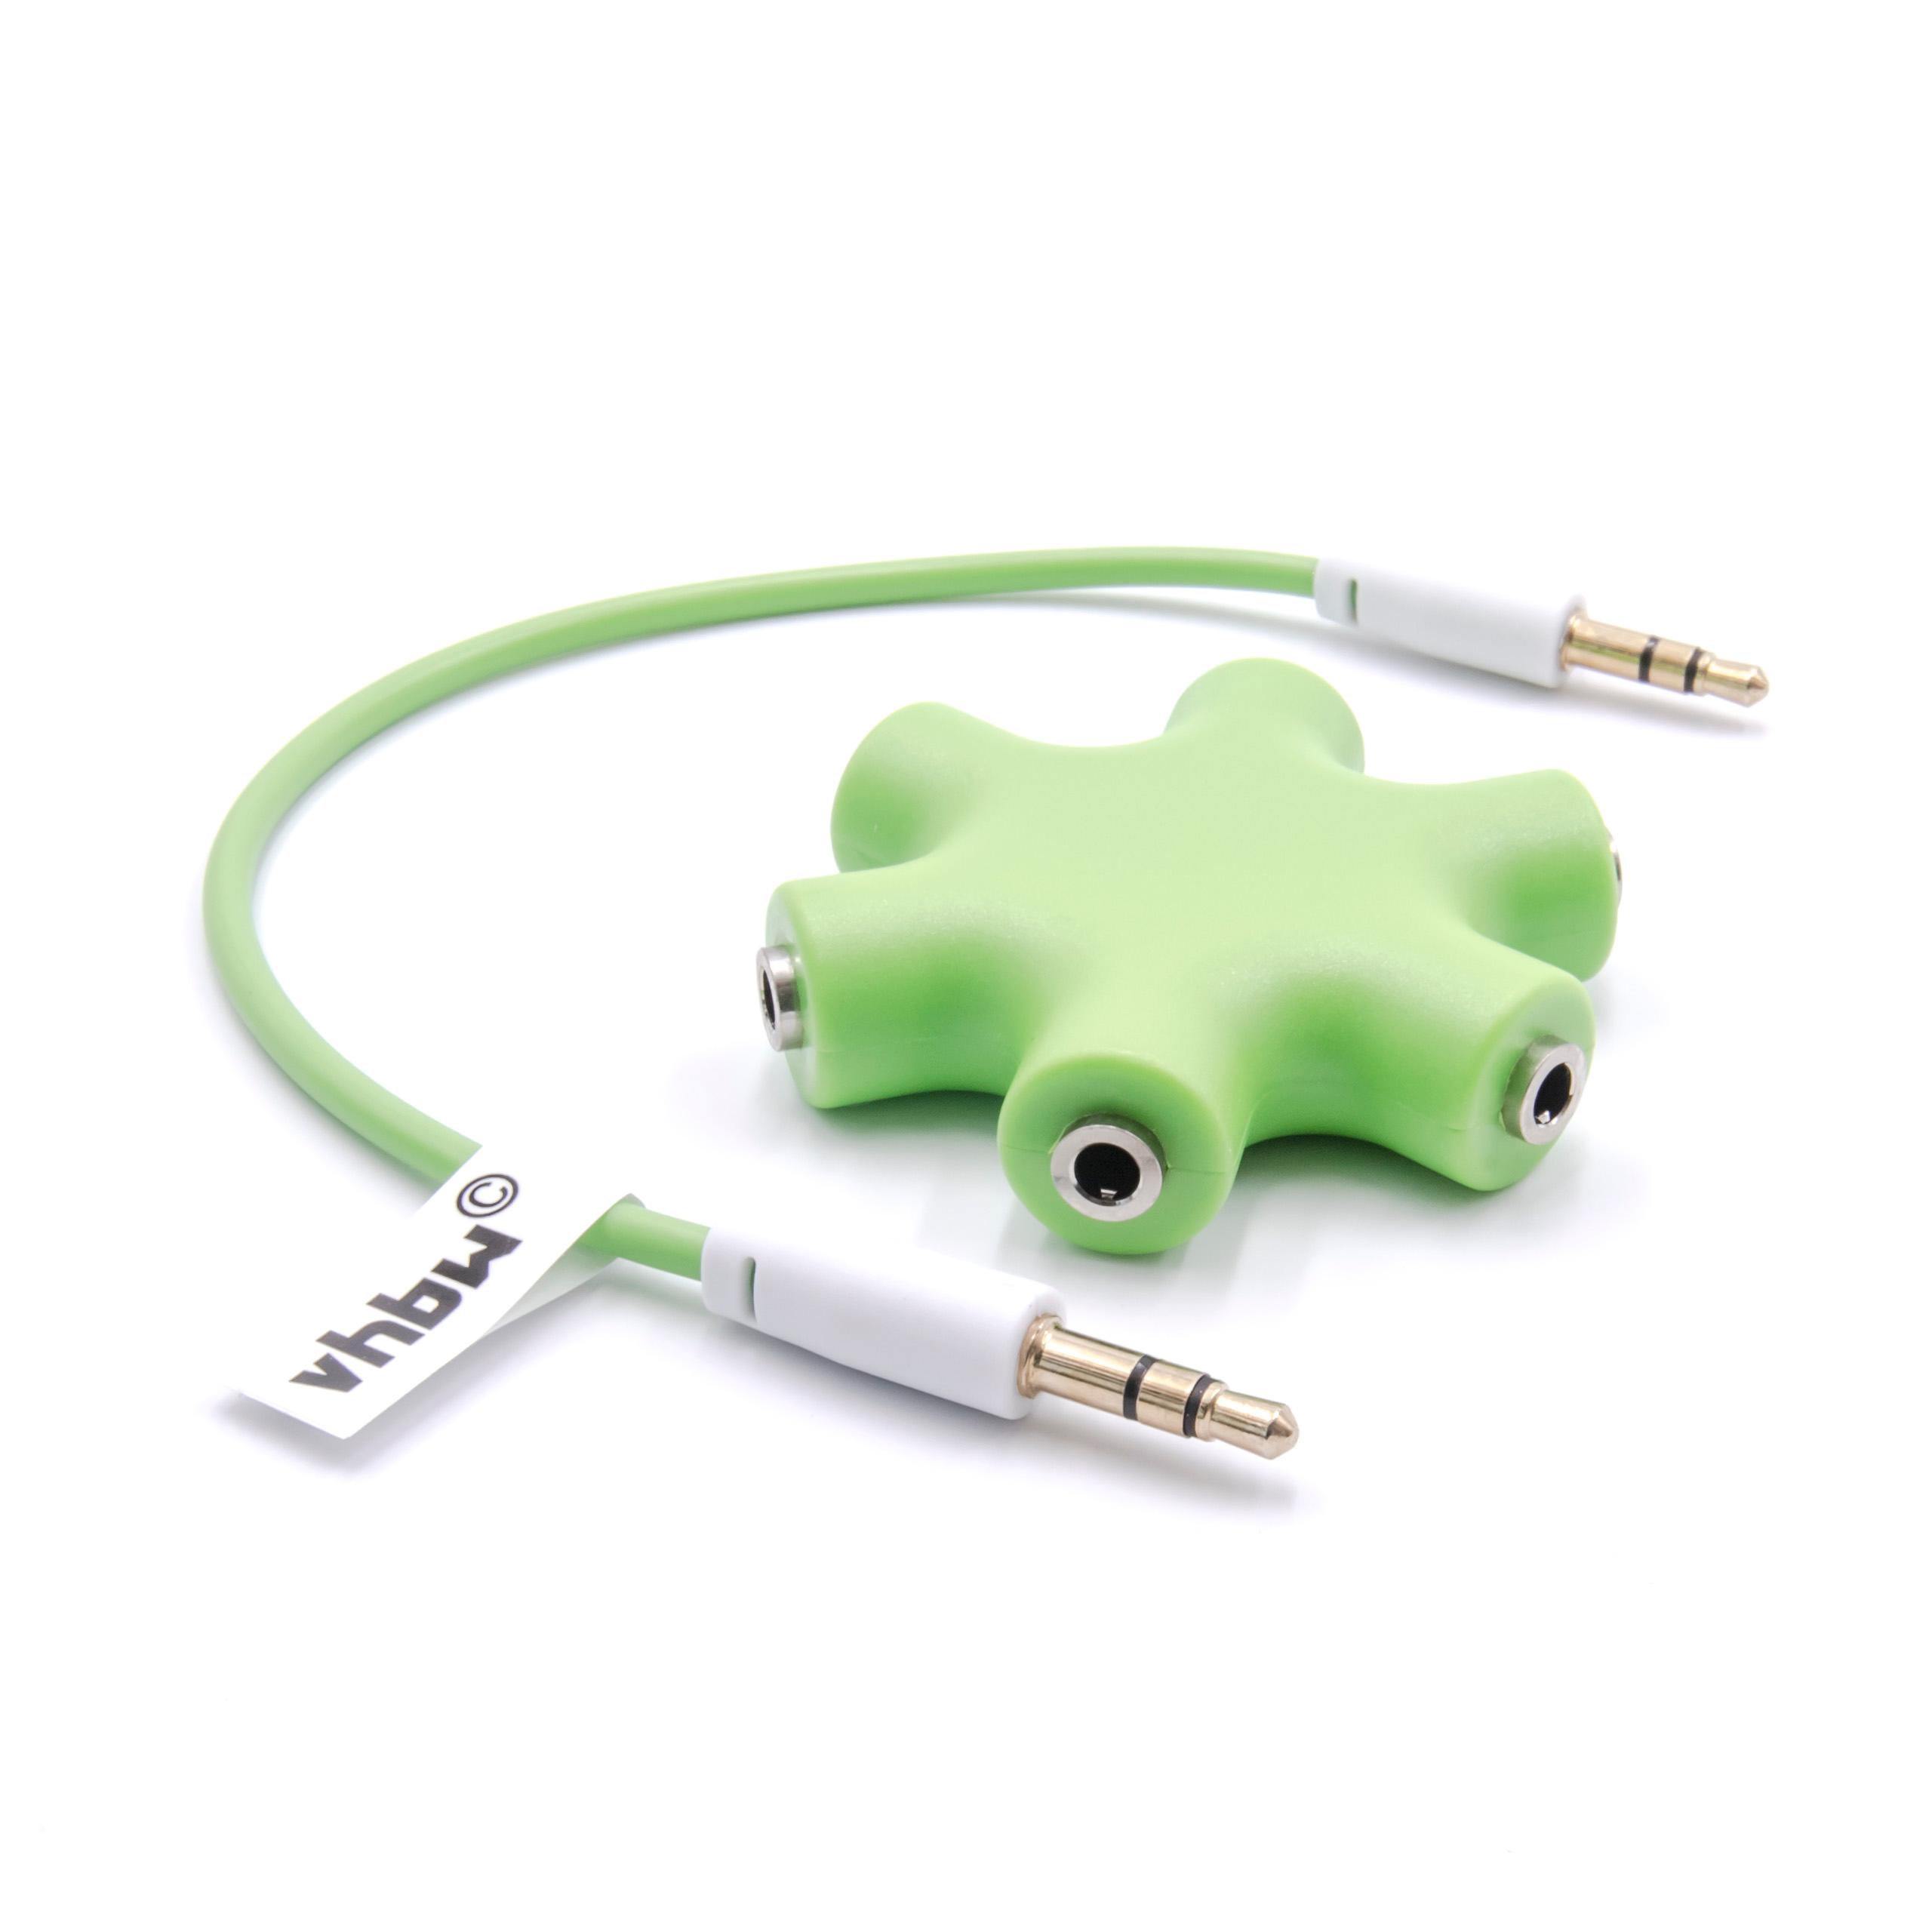 vhbw audio splitter a 6 vie, sdoppiatore AUX verde per cuffie, altoparlanti, tablet, casse